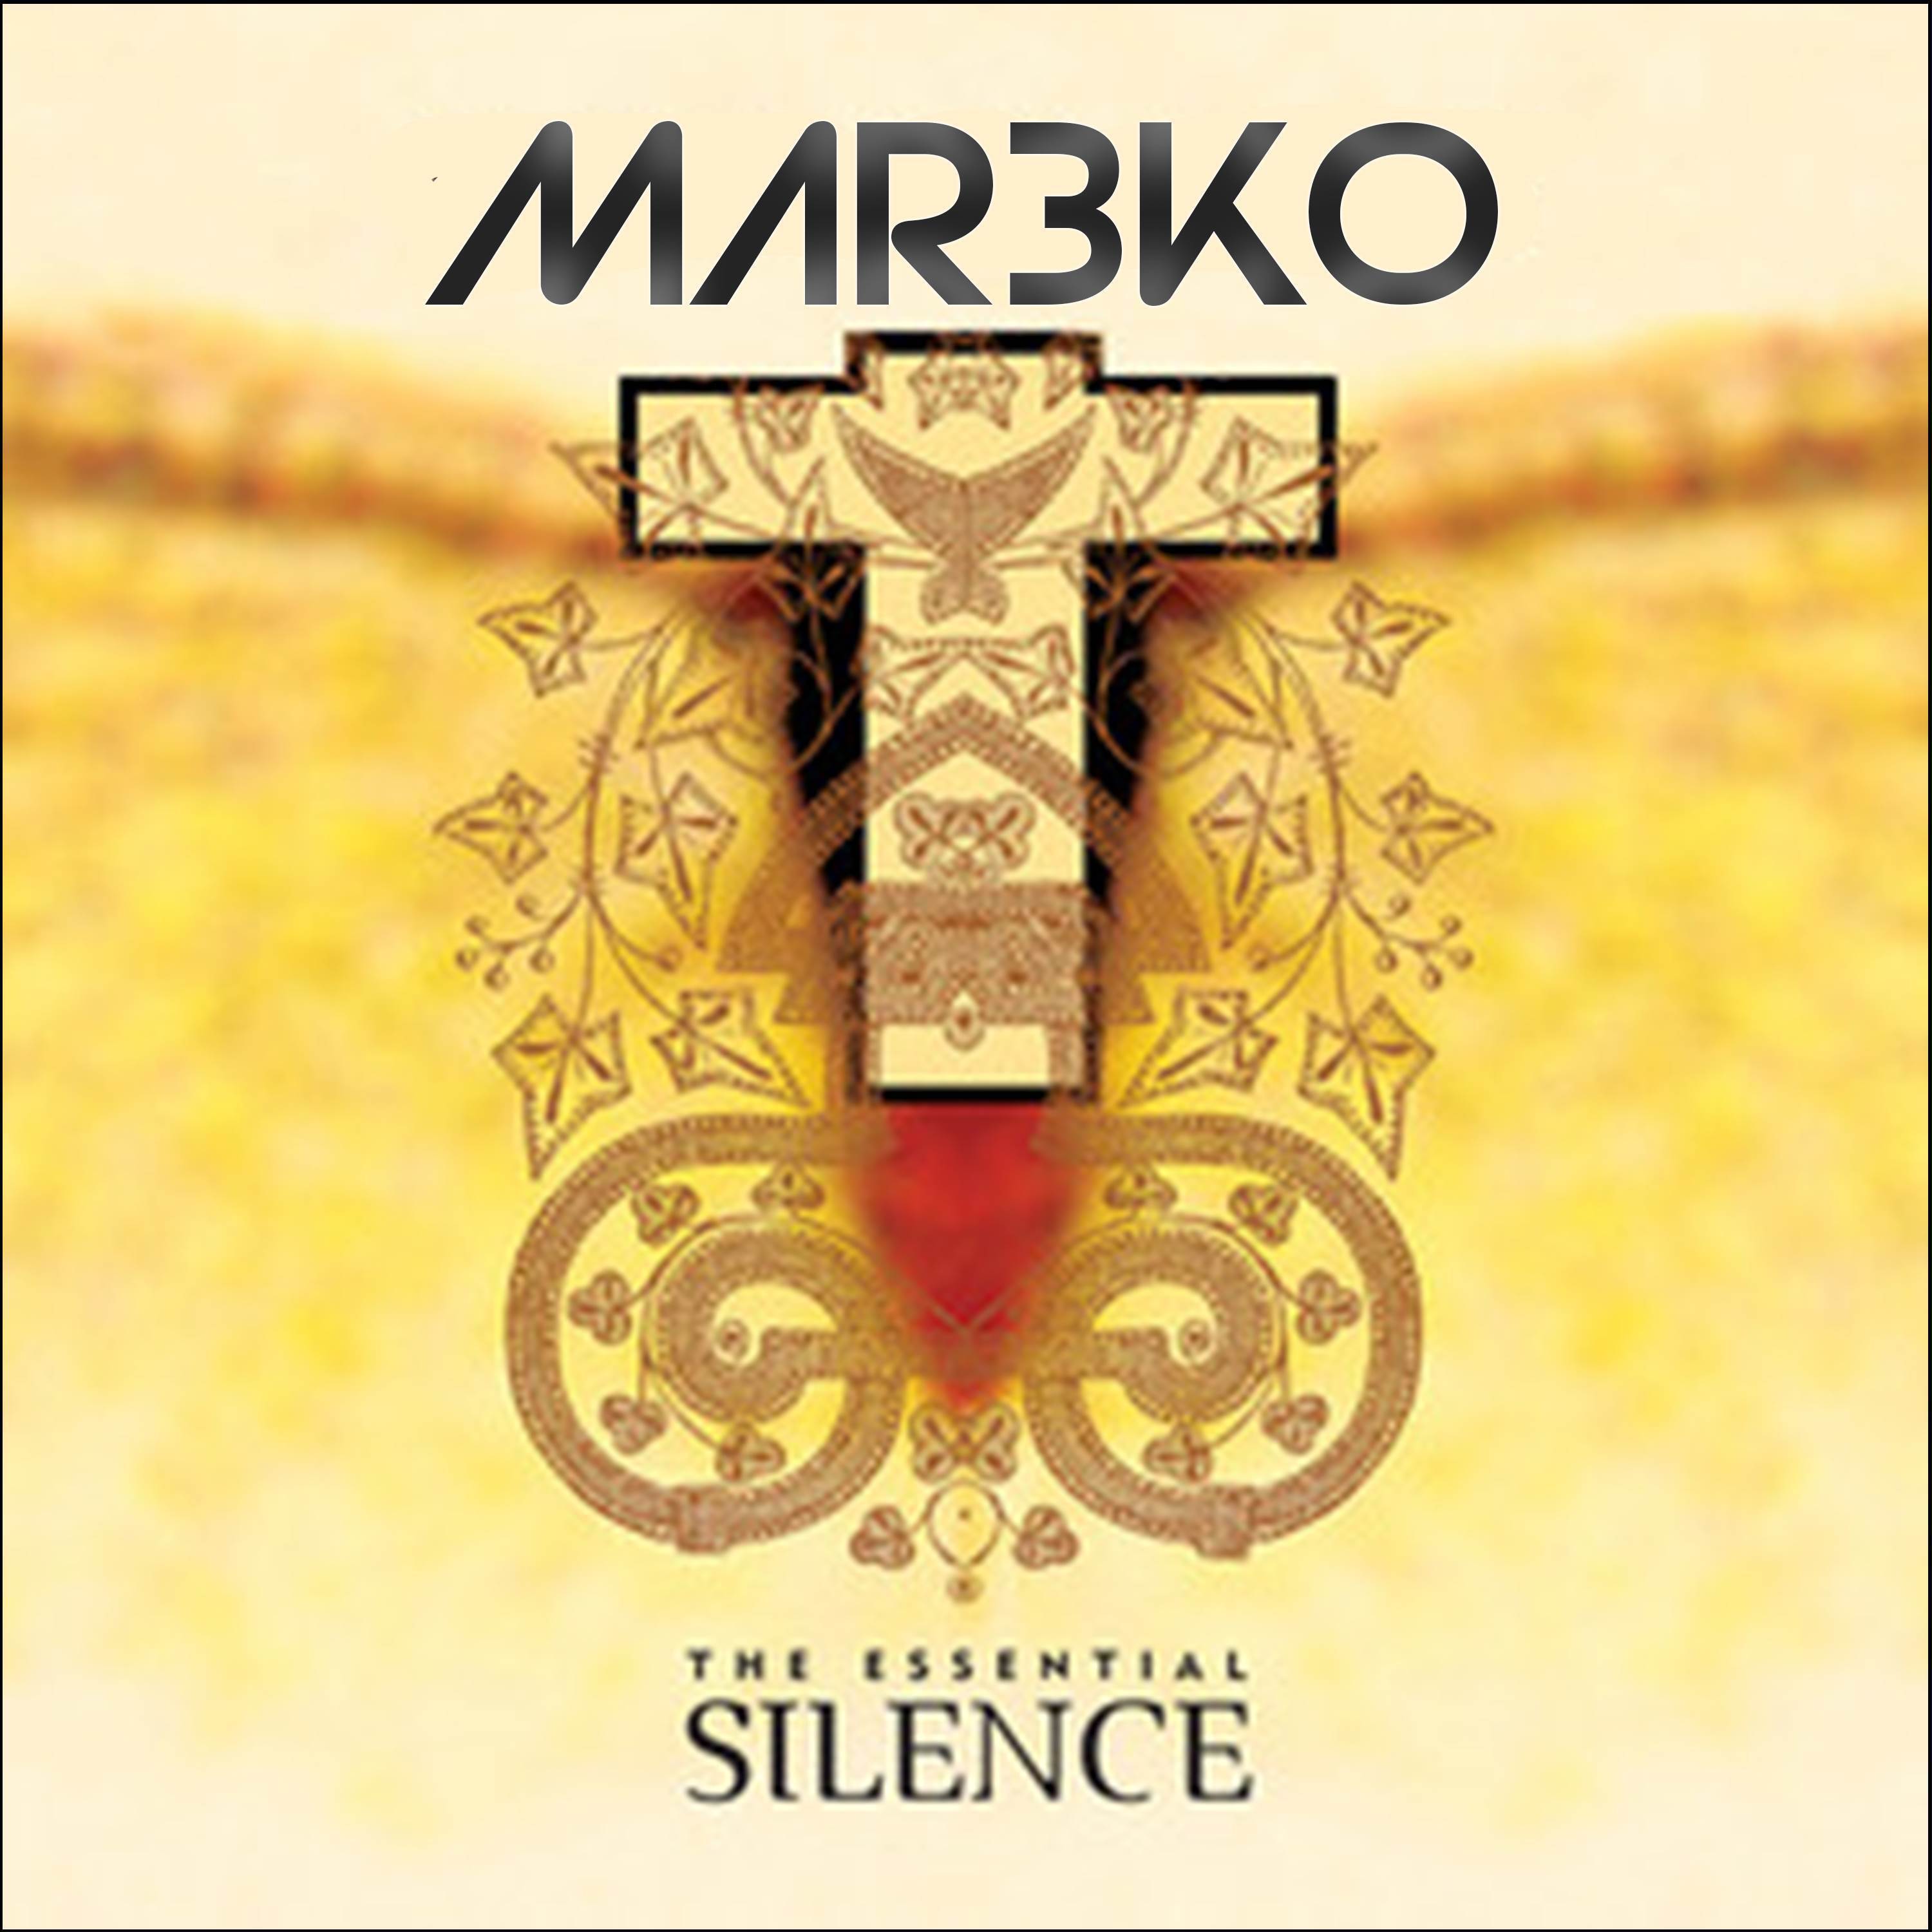 Mar3ko - Silence